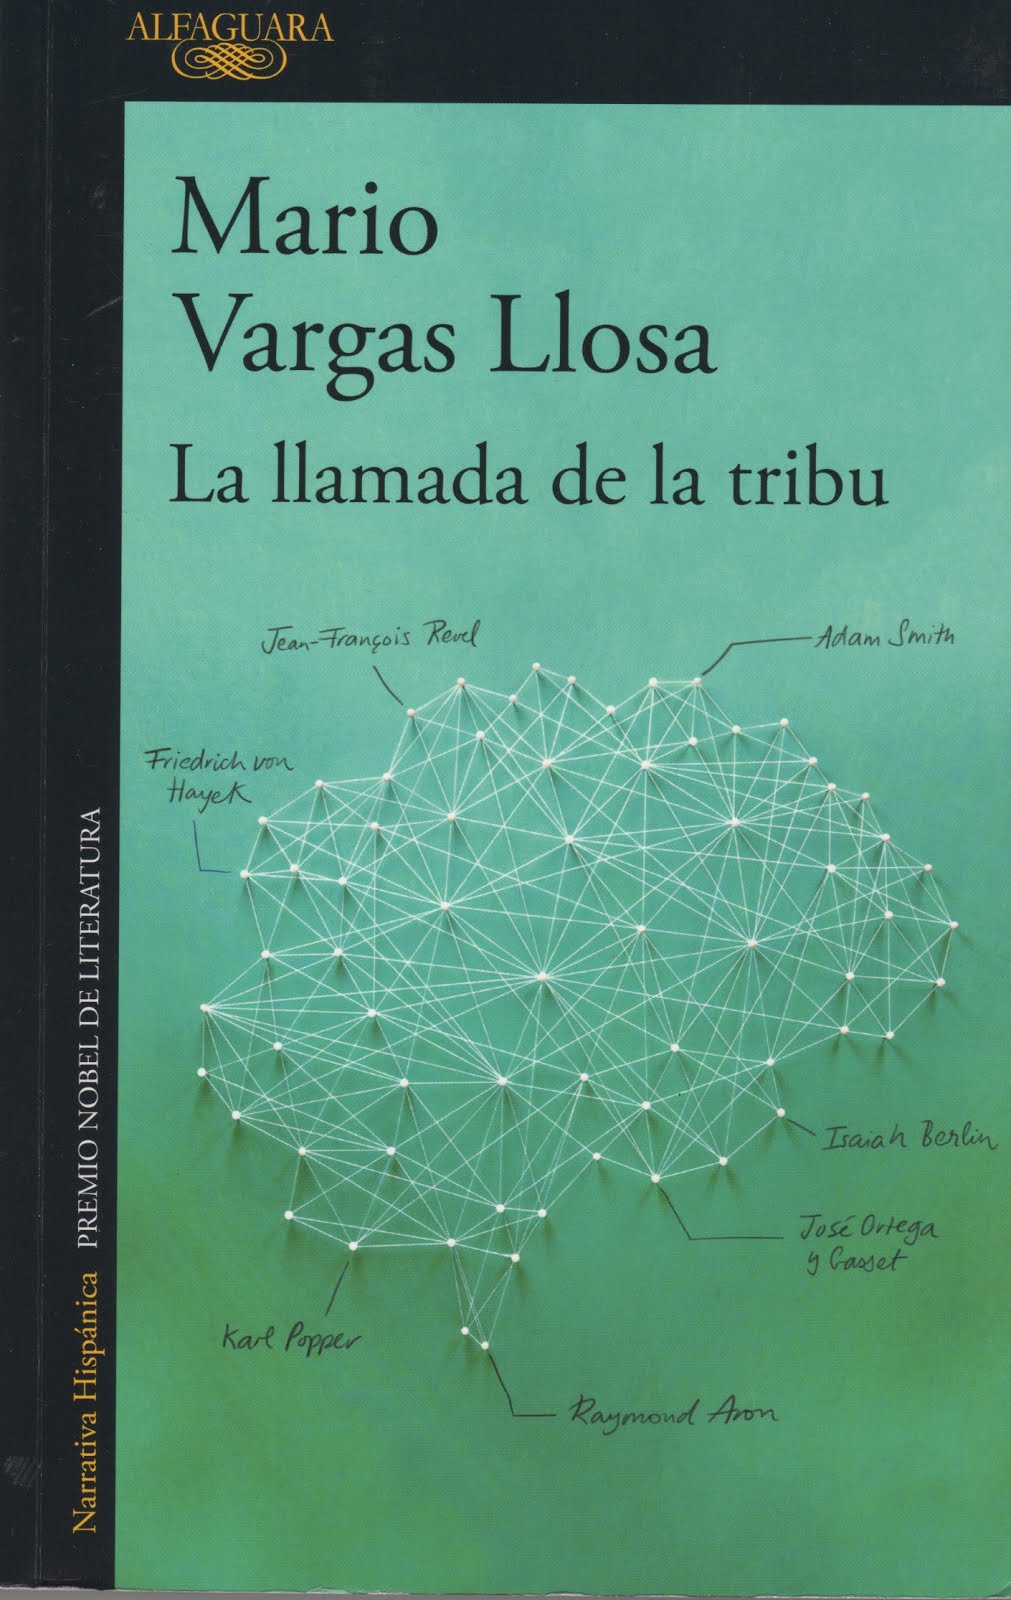 Mario Vargas Llosa (La llamada de la tribu)